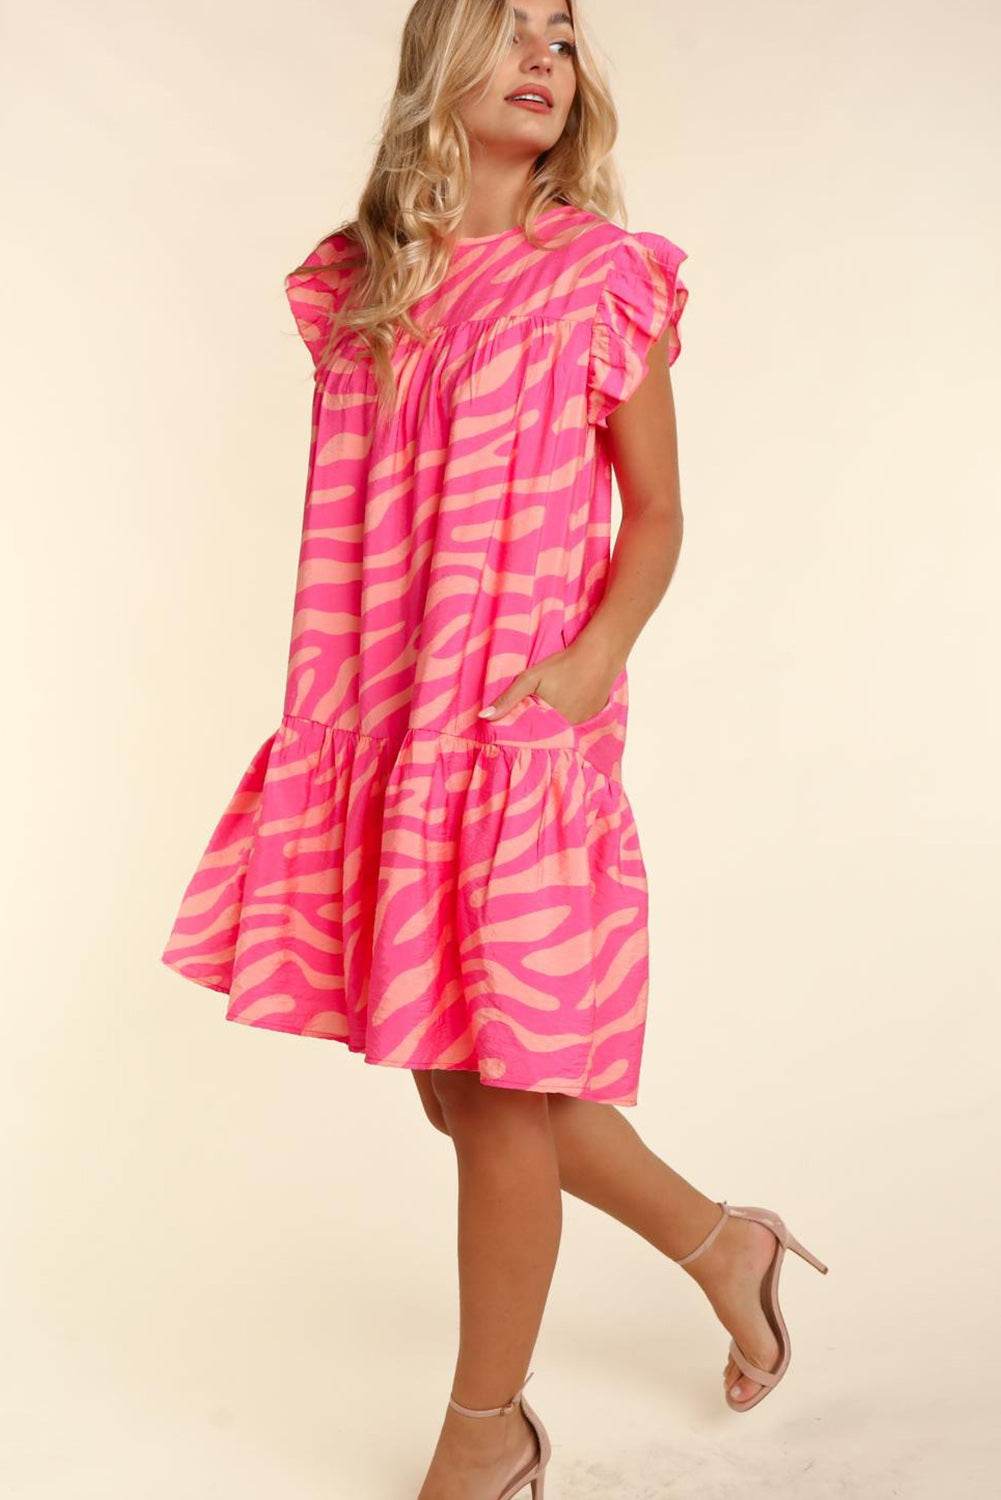 Pink Zebra Print Ruffle Trim Mini Dress